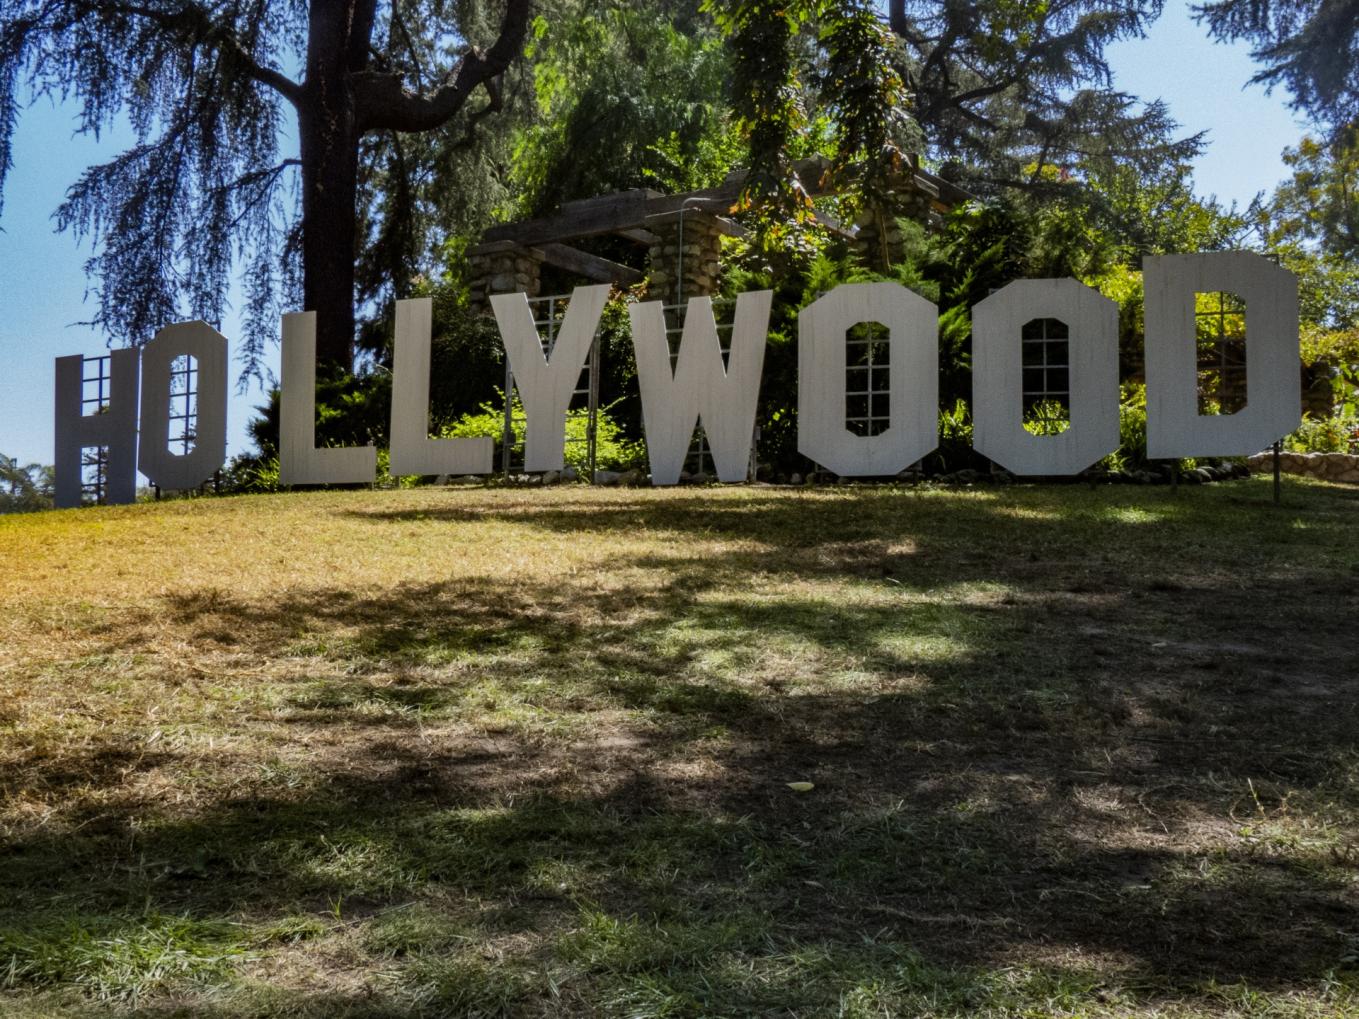 Quais são as características mais exclusivas das casas de celebridades em Hollywood?